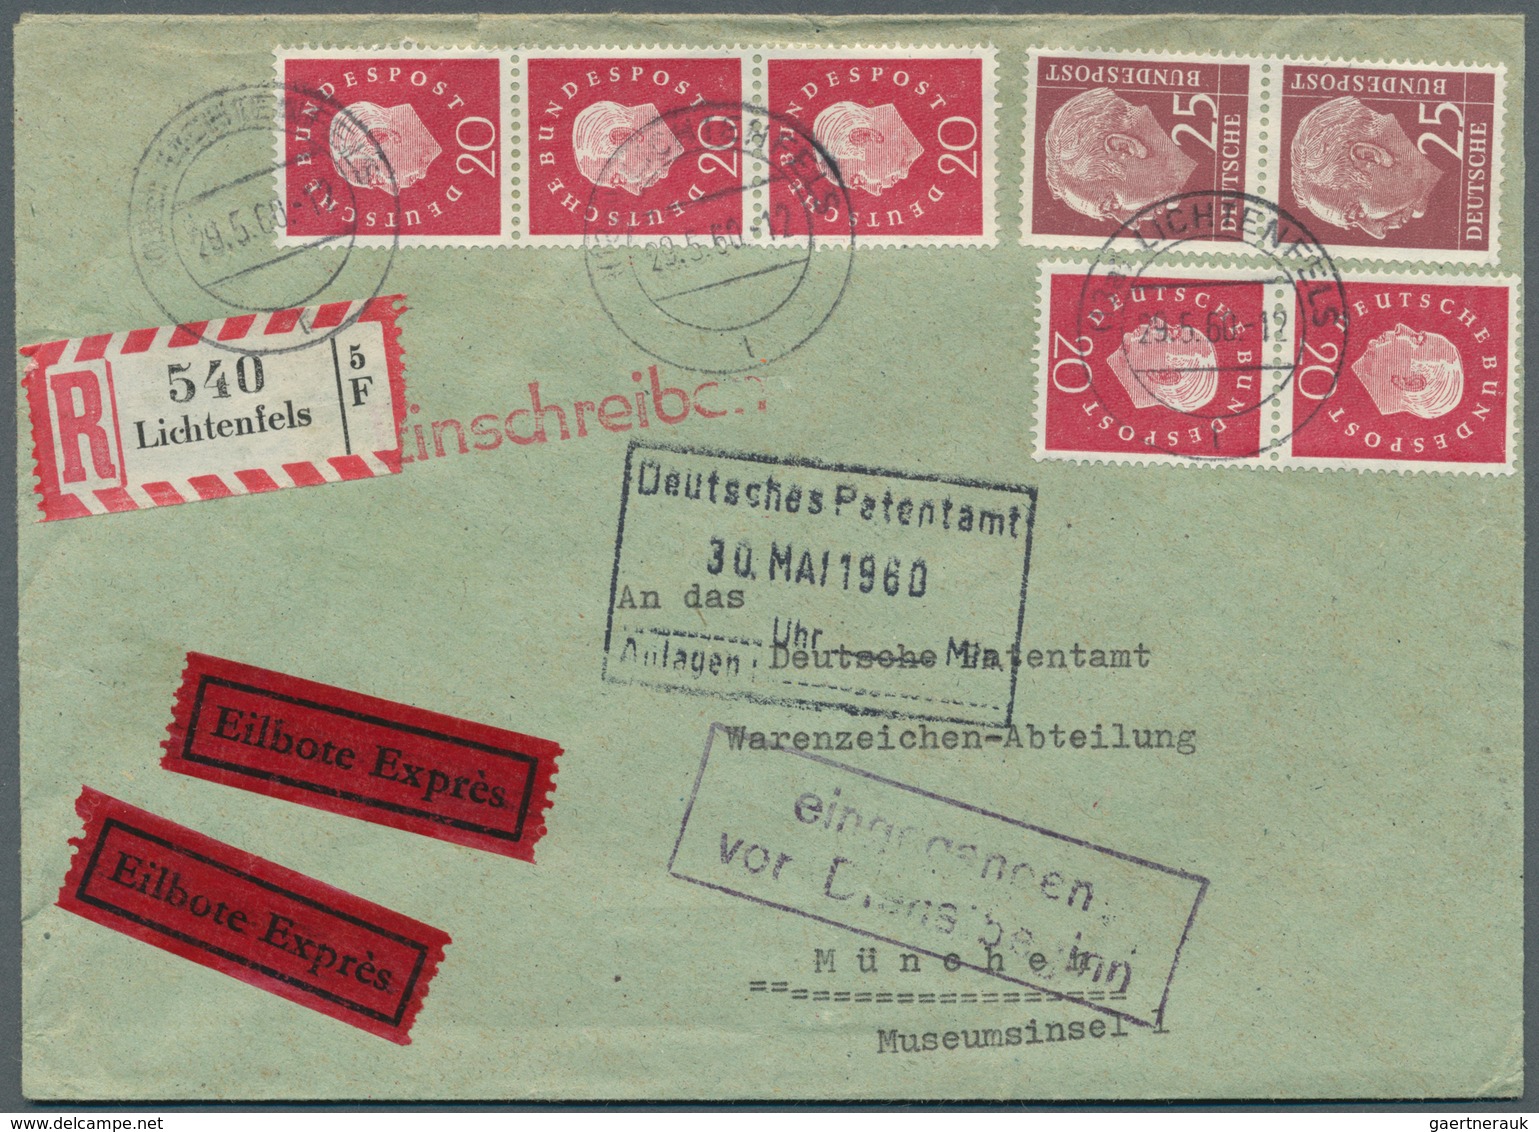 Bundesrepublik Deutschland: 1950/1970 (ca.), vielseitiger Bestand von ca. 830 Briefen/Karten mit dek